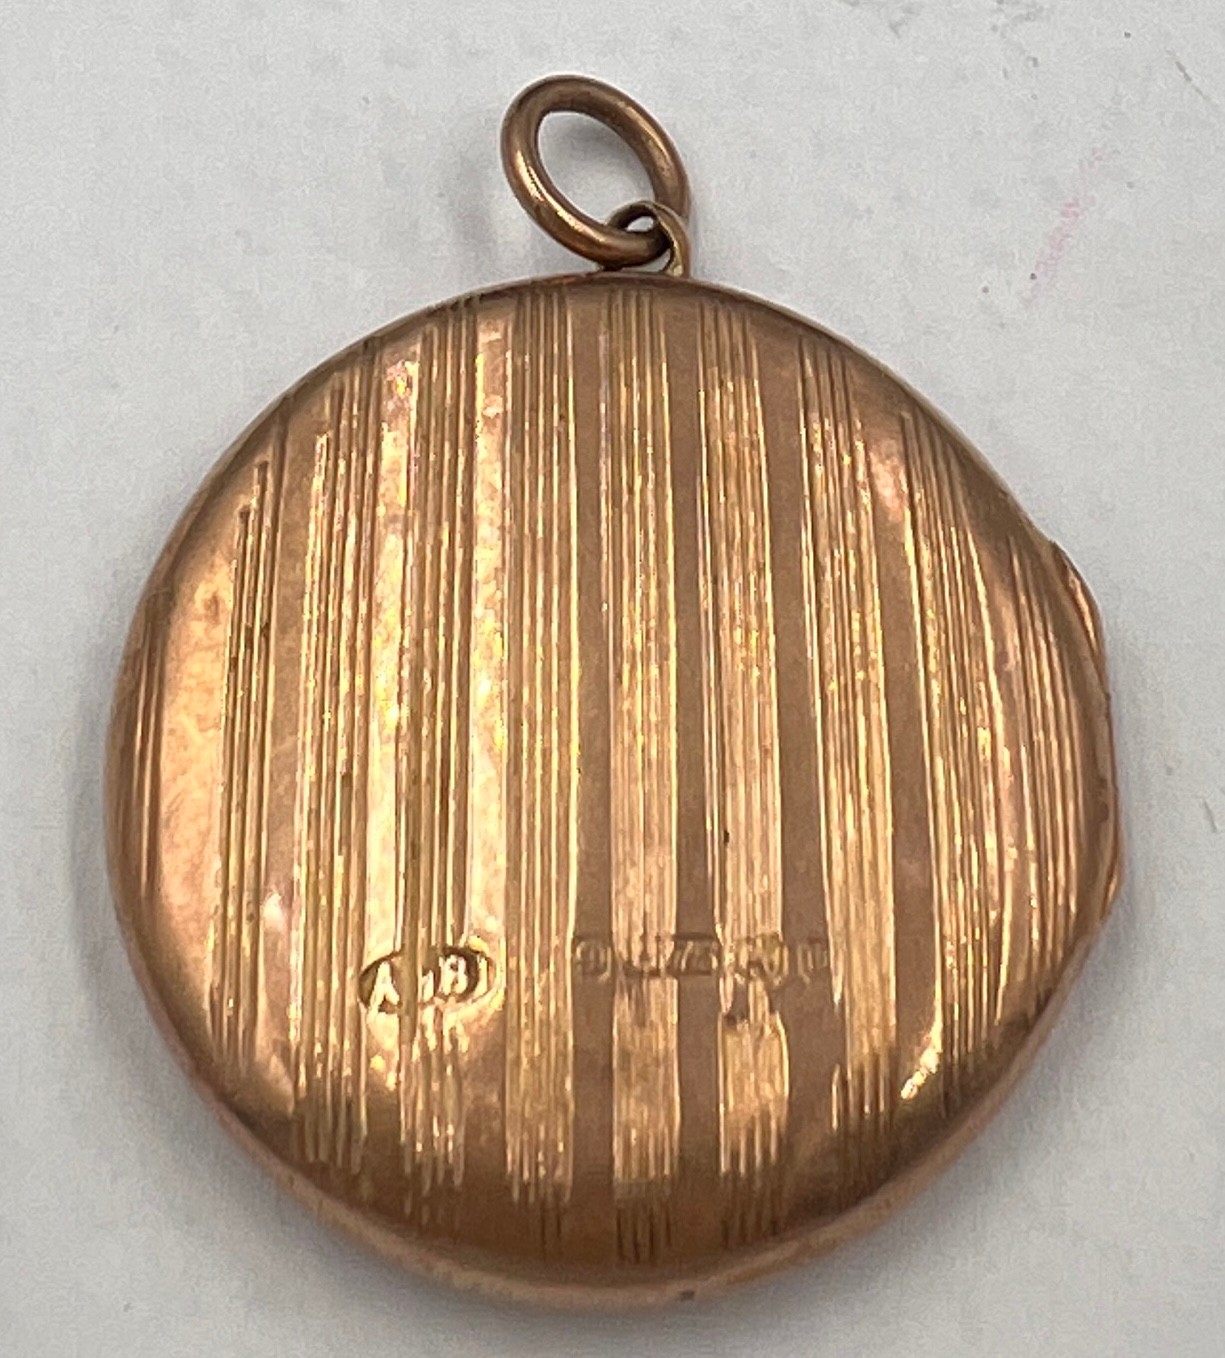 A 9 carat gold circular locket. 2.5cm d. Weight 5.3gm. - Image 2 of 3